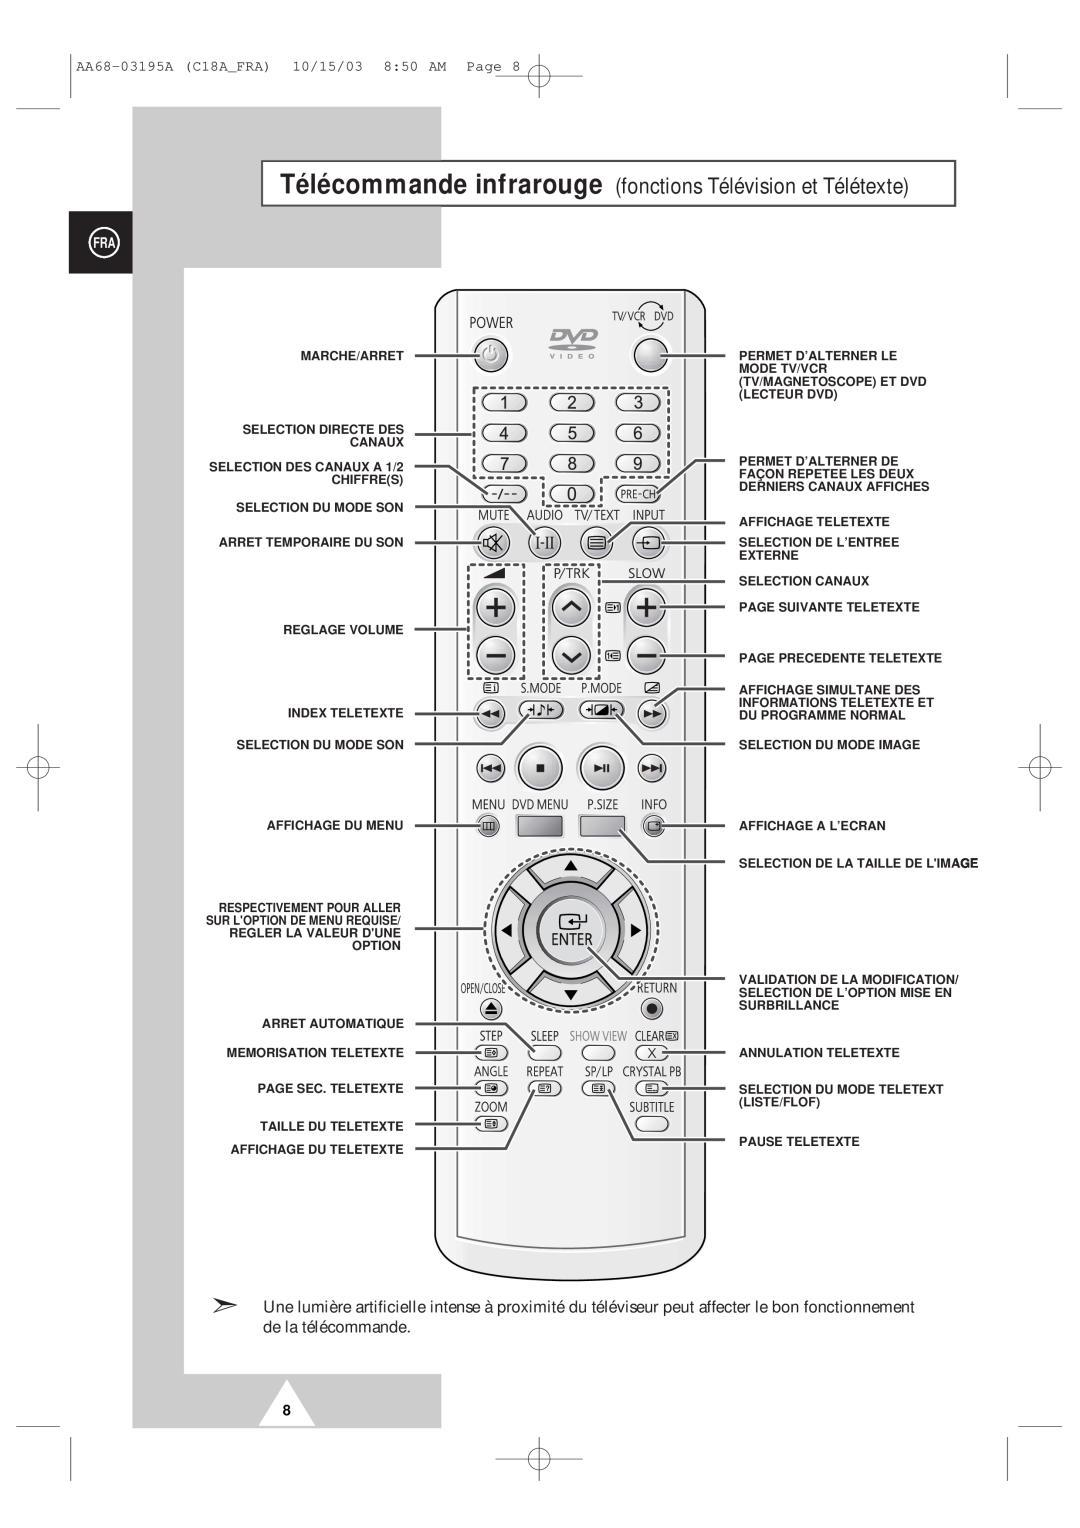 Samsung UW17J11VD5XXEC Télécommande infrarouge fonctions Télévision et Télétexte, AA68-03195A C18AFRA 10/15/03 850 AM Page 